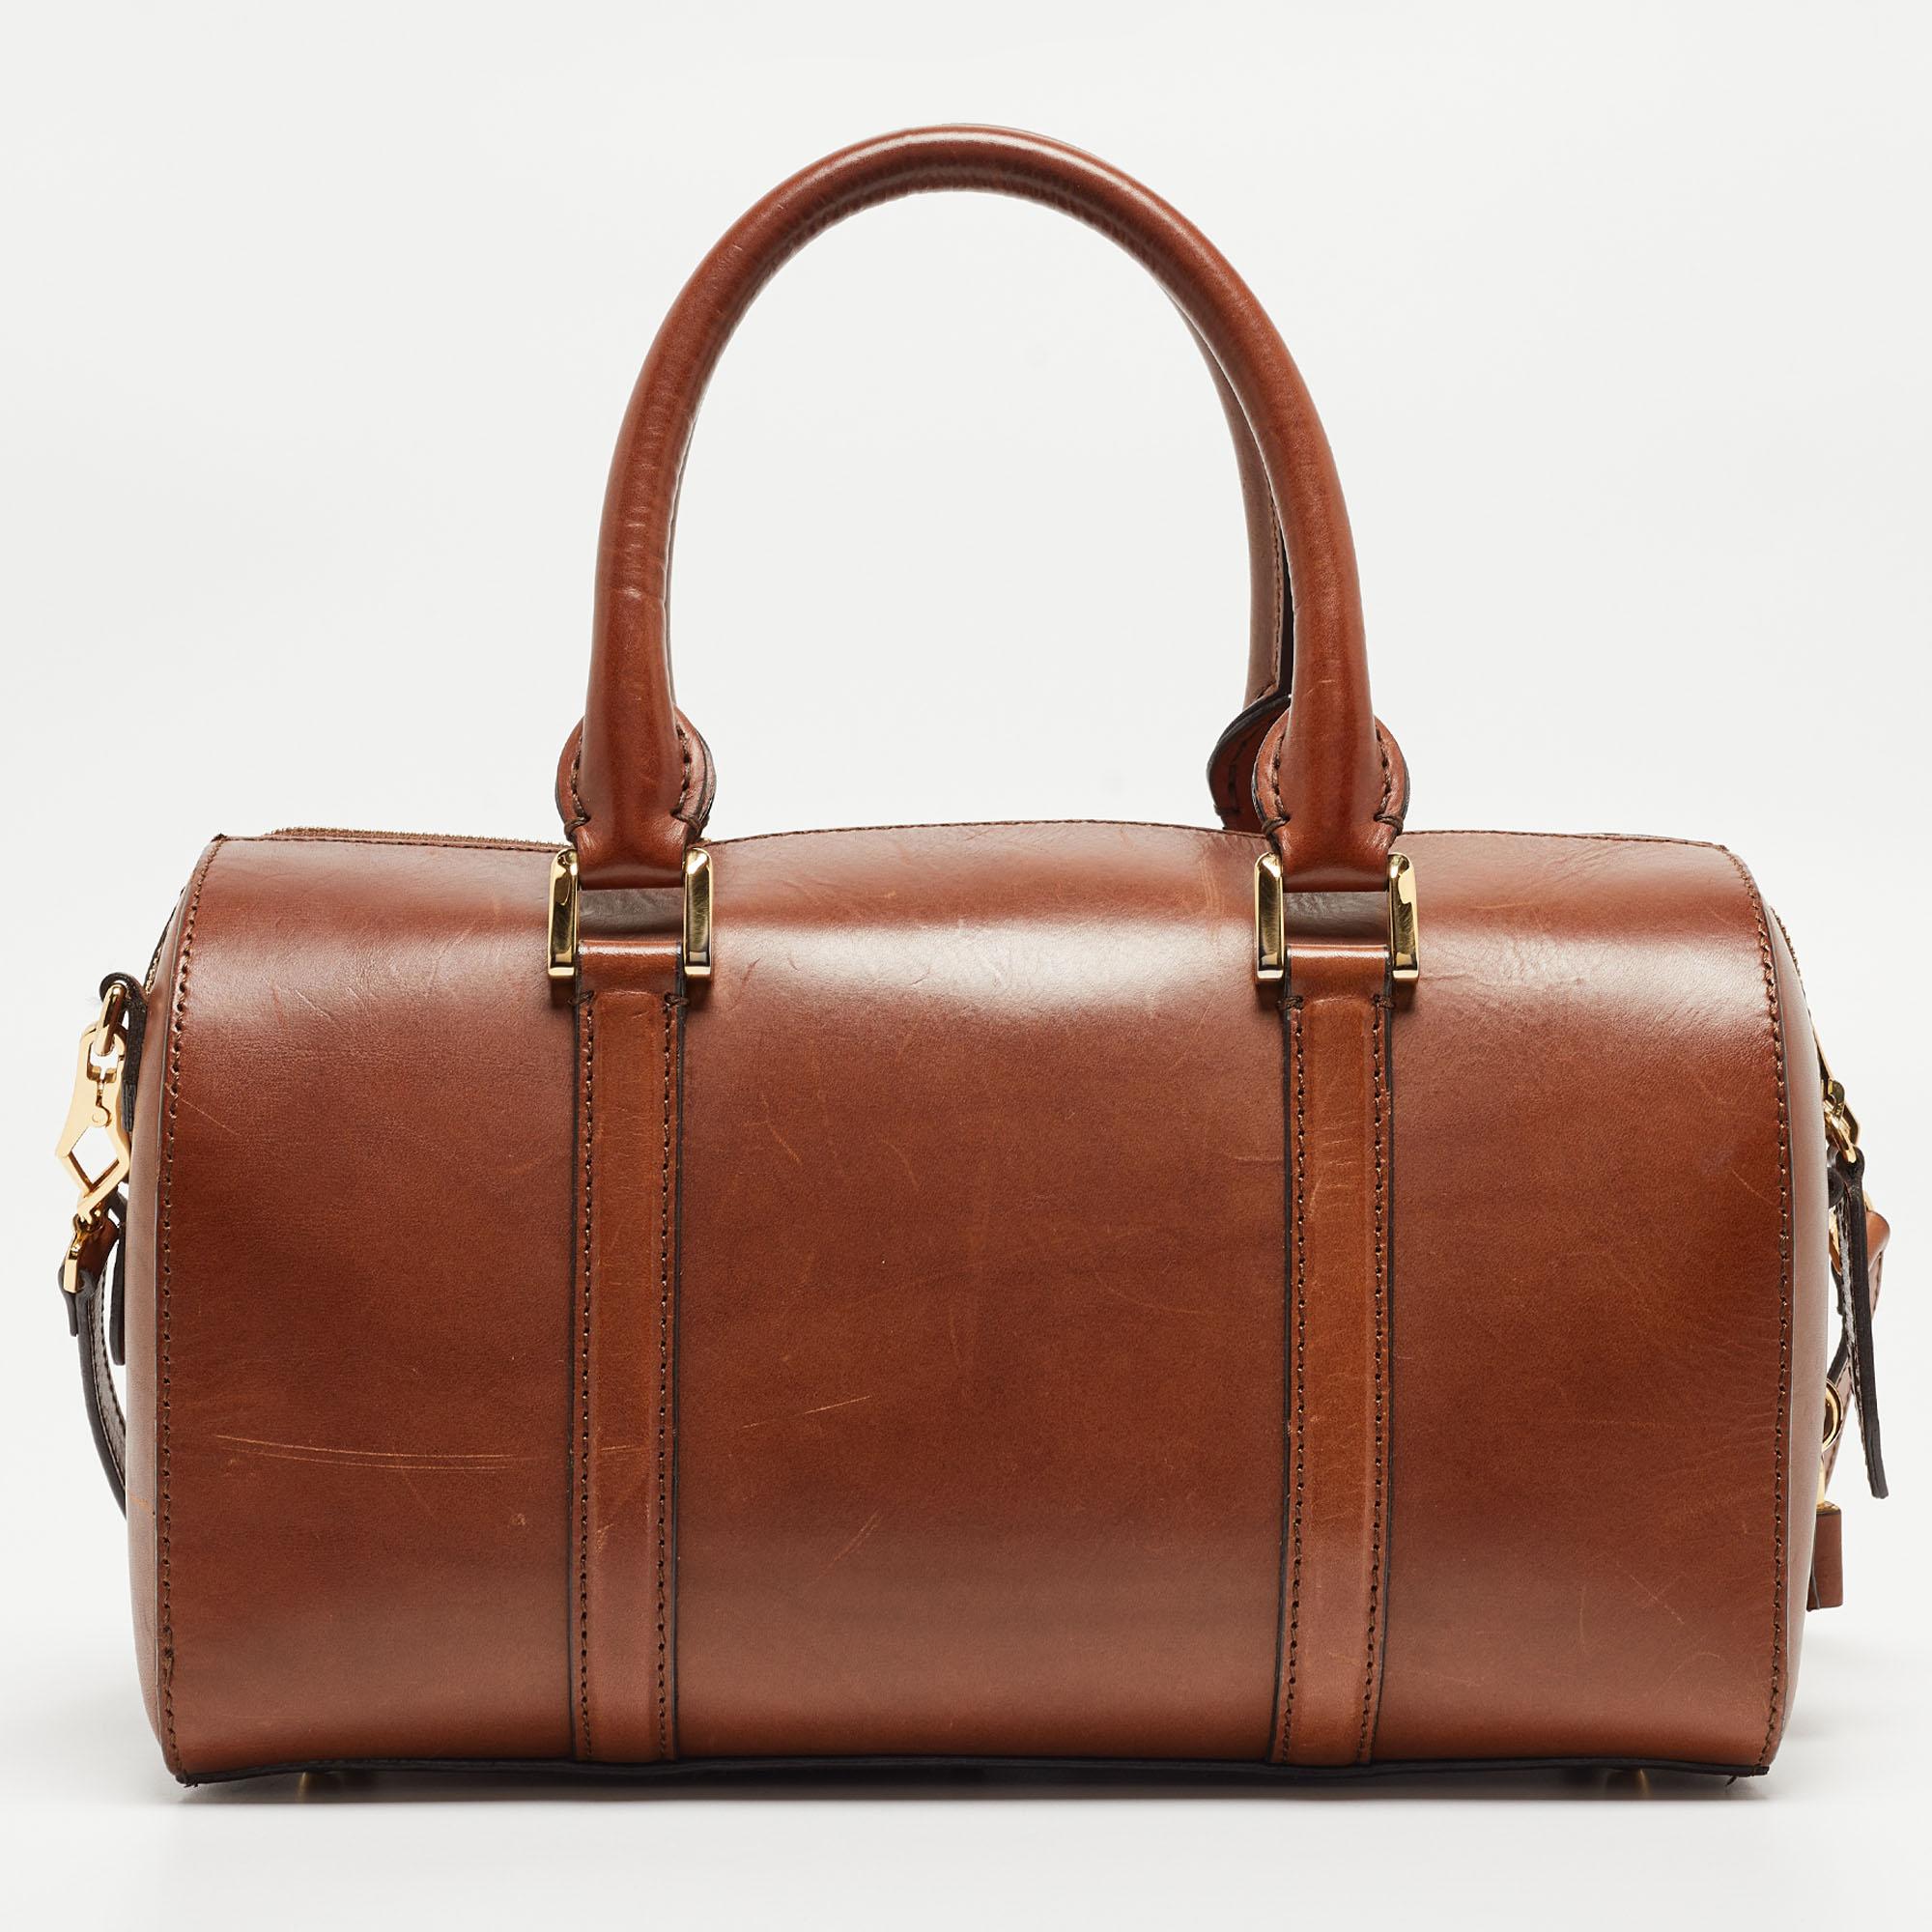 Un sac à main classique est la promesse d'un attrait durable, qui rehausse votre style à chaque fois. Ce sac brun de Burberry est l'une de ces créations. C'est un bon achat.

Comprend : Courroie détachable, cadenas et clés, sacoche d'origine

